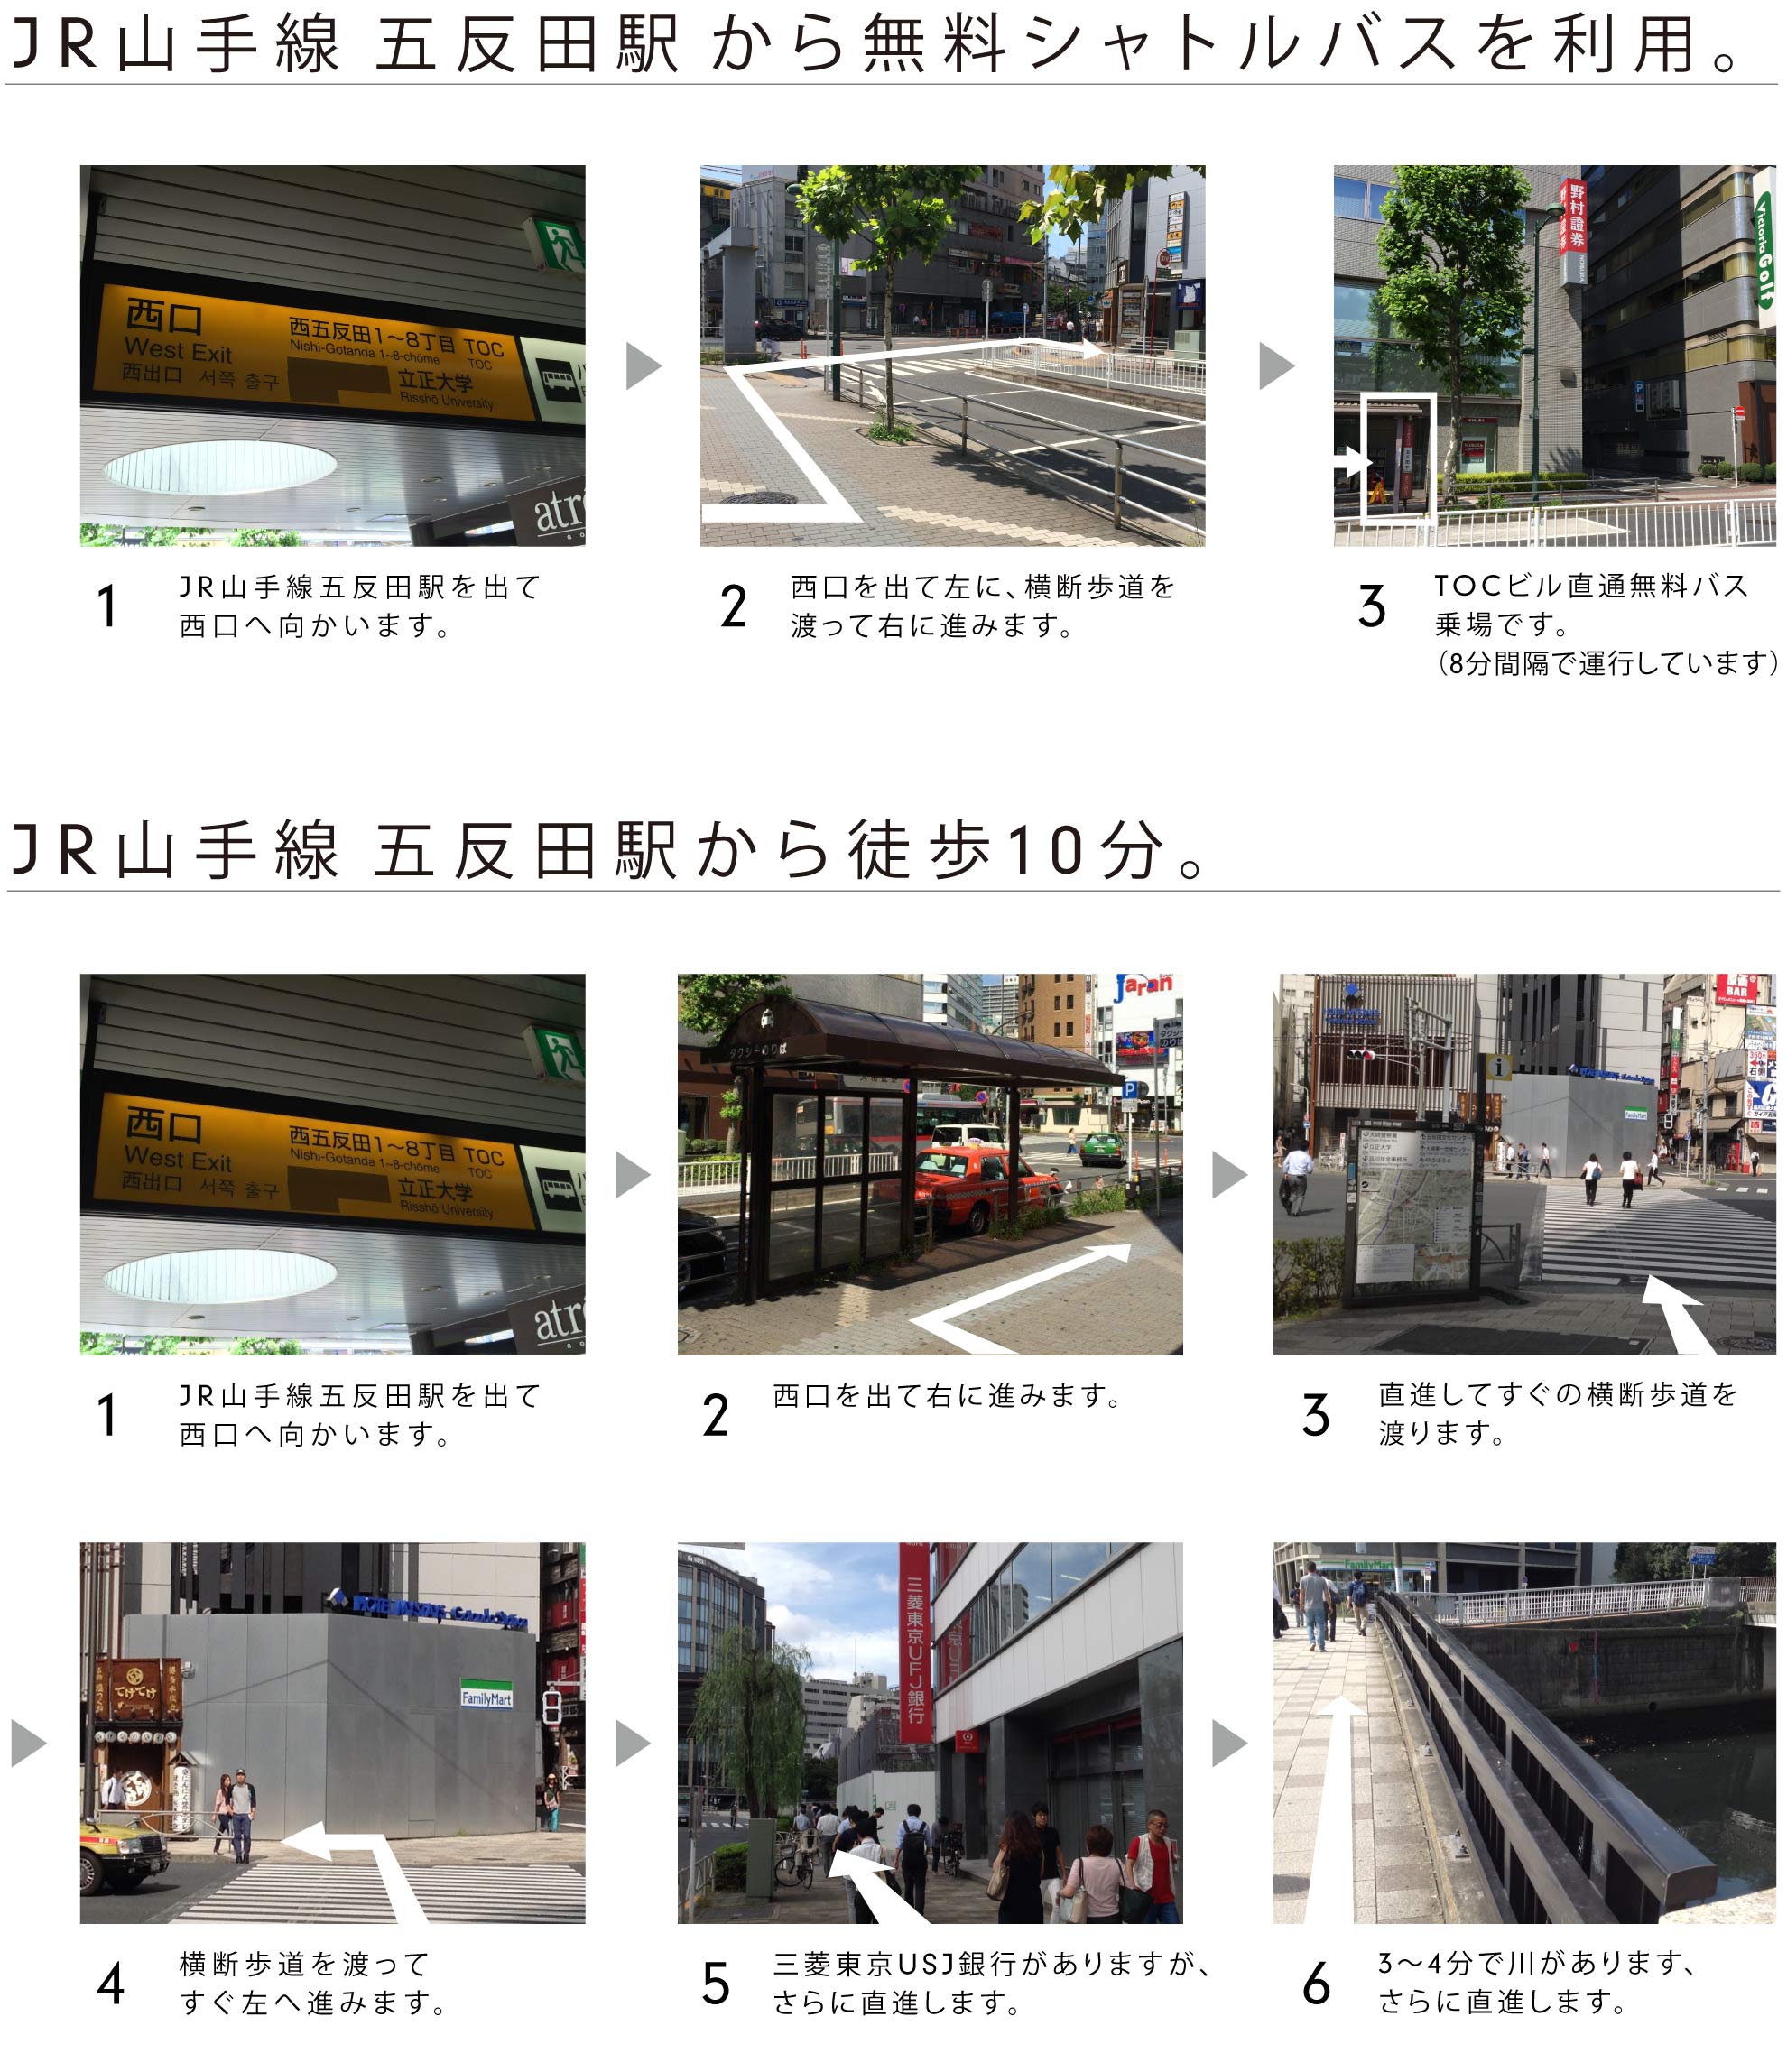 JR山手線五反田駅から徒歩10分。無料シャトルバスもご利用頂けます。